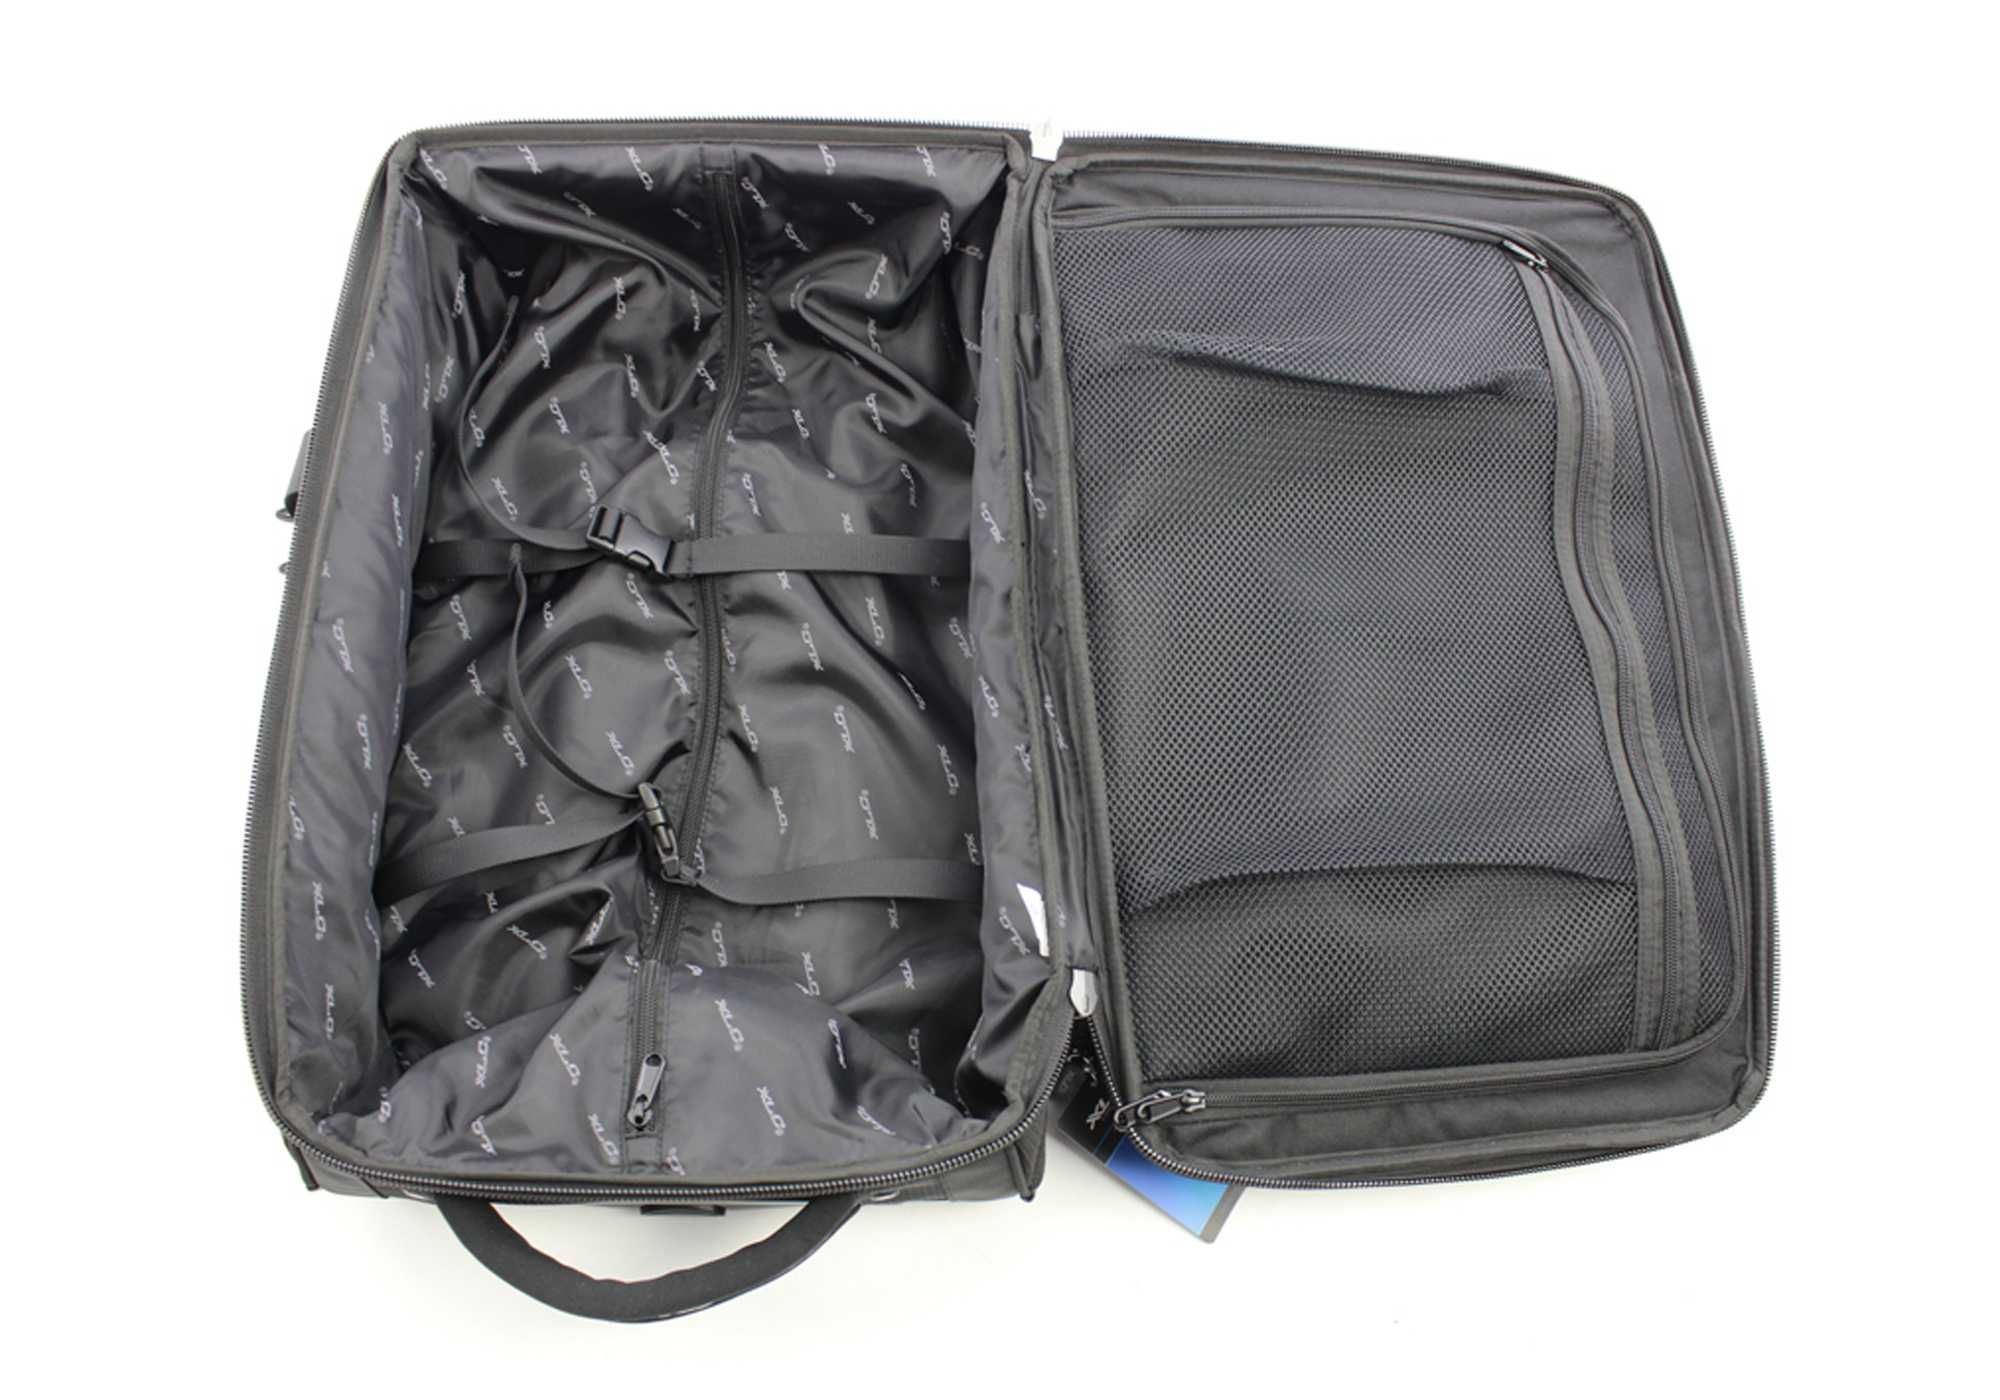 Torba podróżna na kółkach XLC TROLLEY walizka BA-W28 BUSINESS 55x35cm